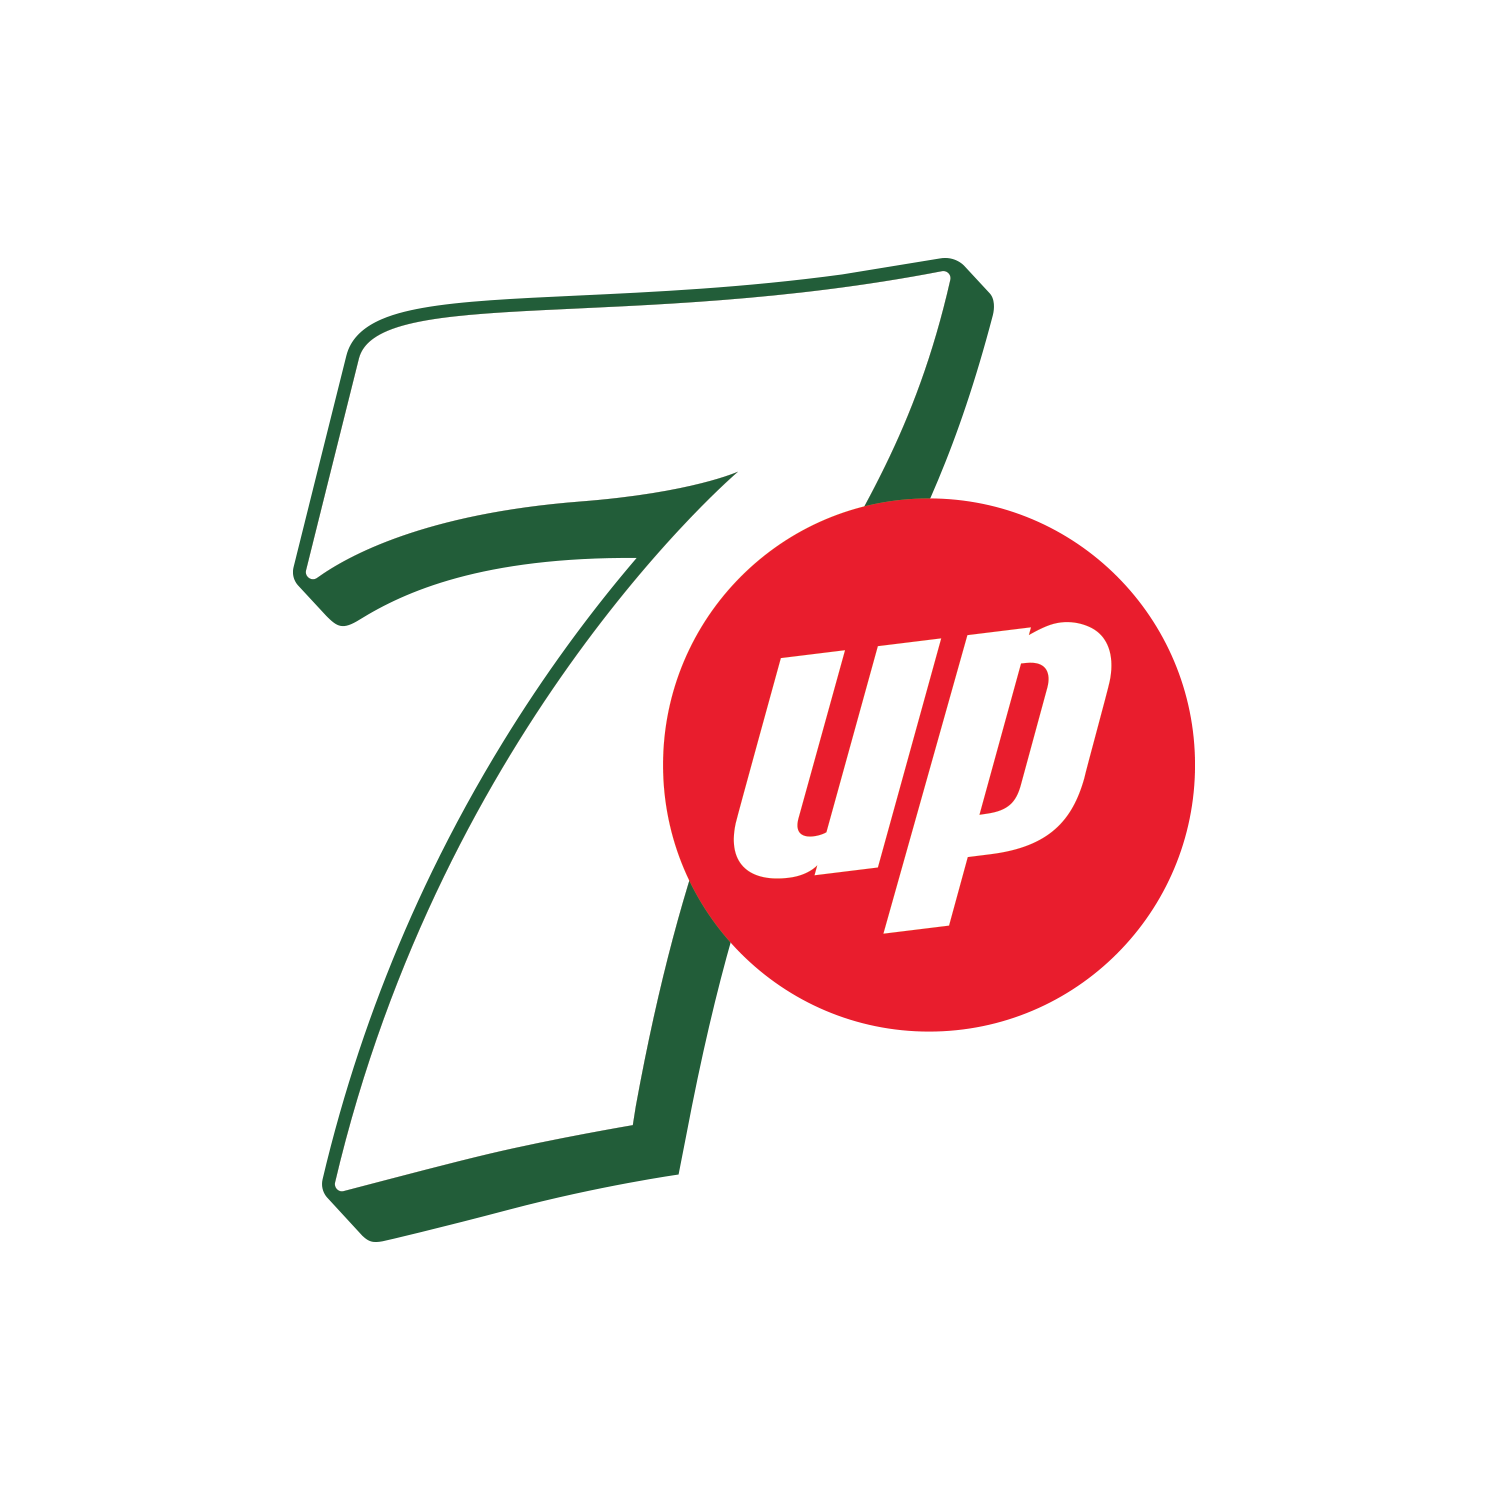 7up Logo